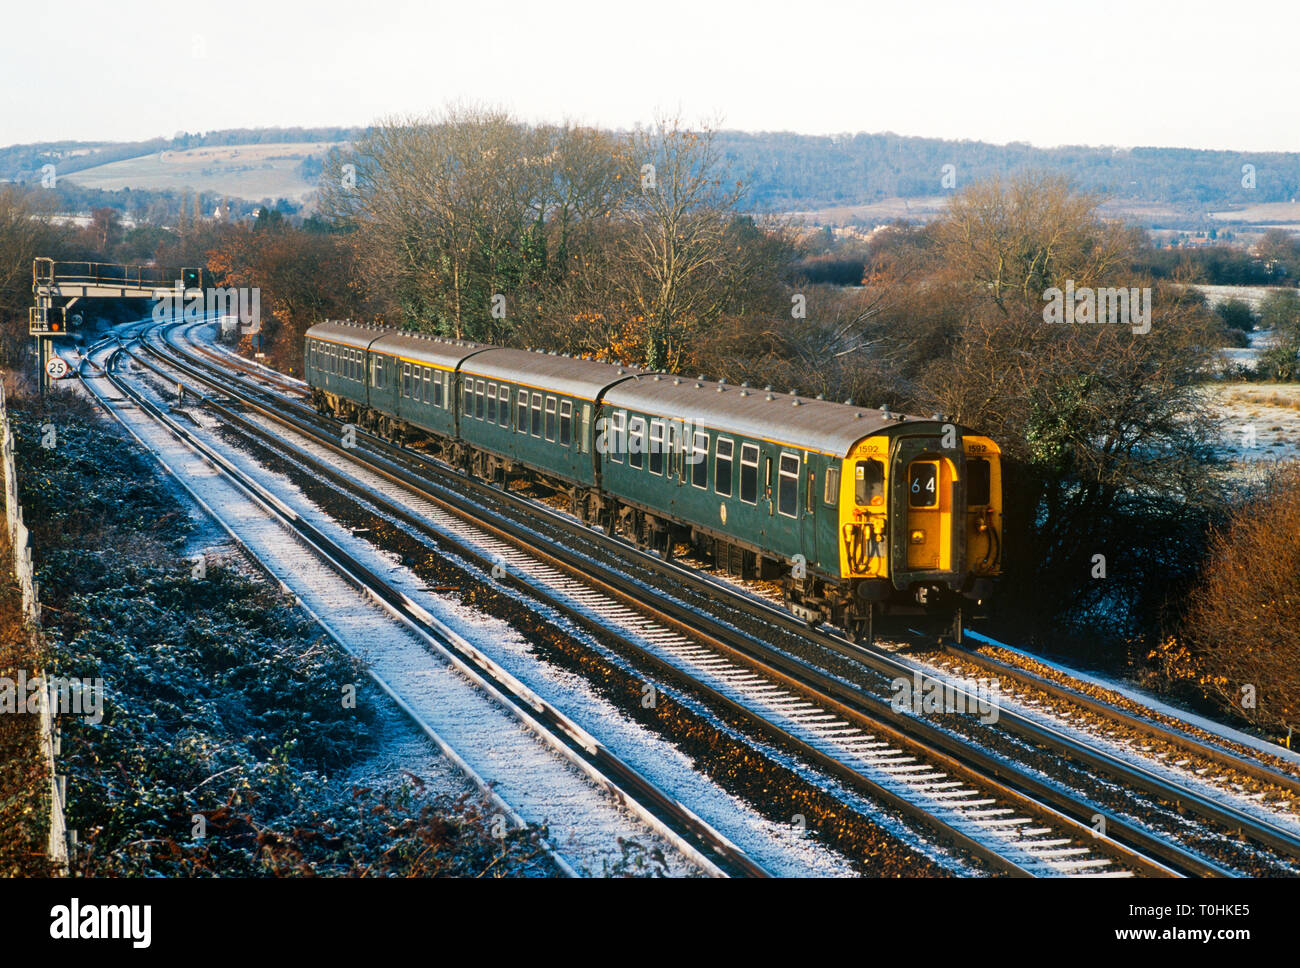 Classe 411 4CEP électrique nombre 1592 repeinte en livrée verte d'origine British Rail pour commémorer la fin de Mk1 porte slam opérations à Otford Junction dans le Kent. 2 janvier 2002. Banque D'Images